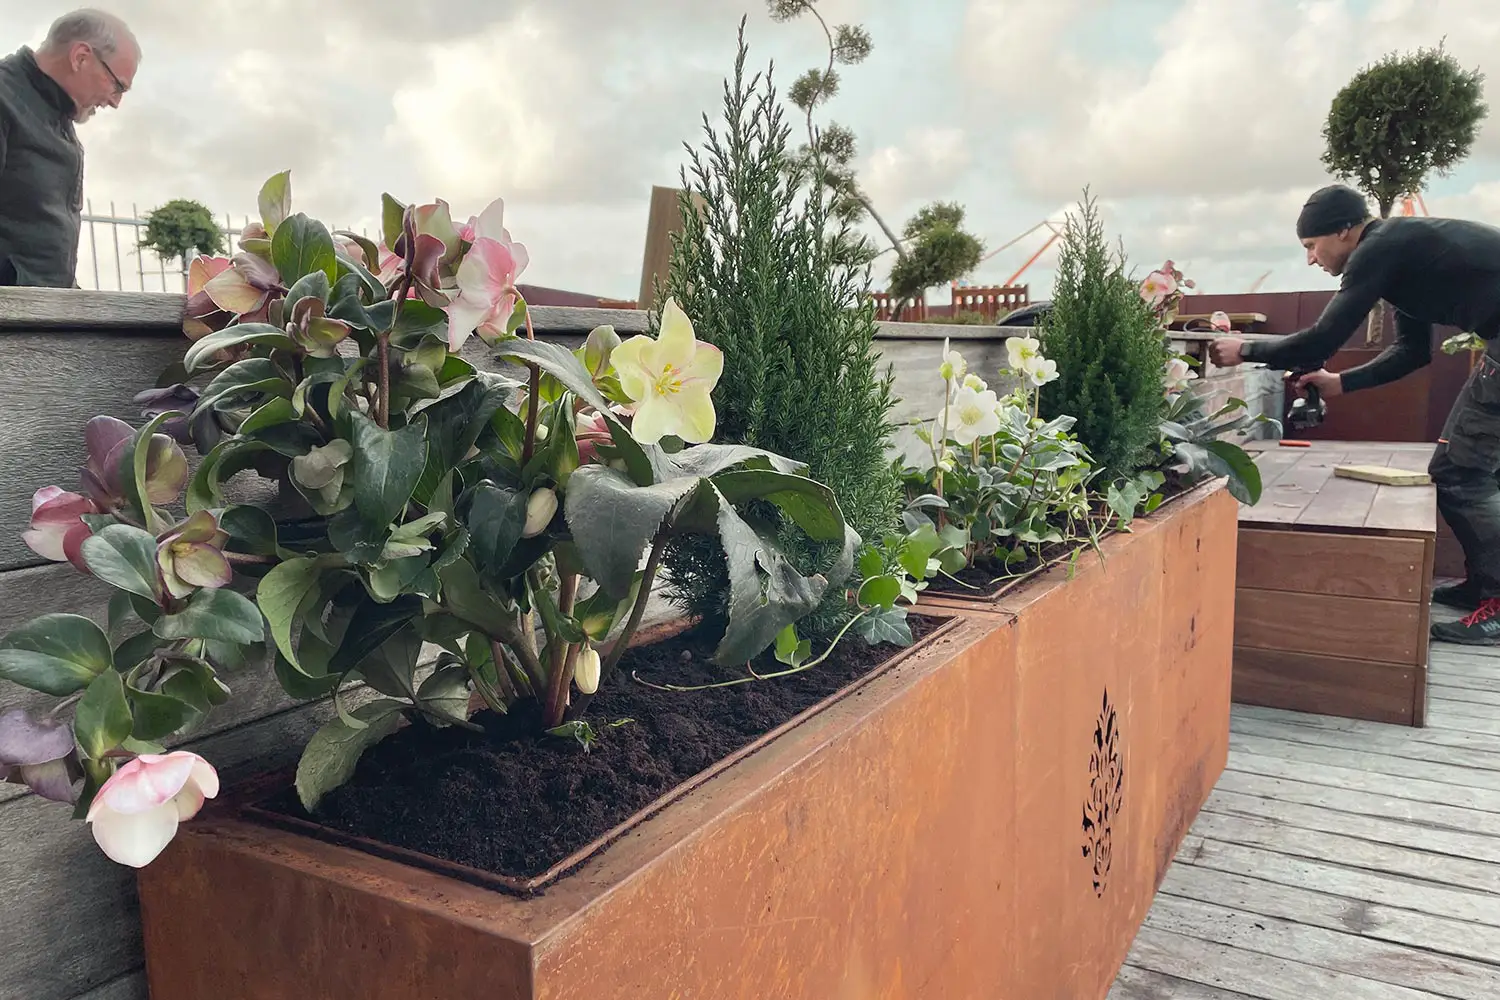 Växter på en takterrass i Göteborg.